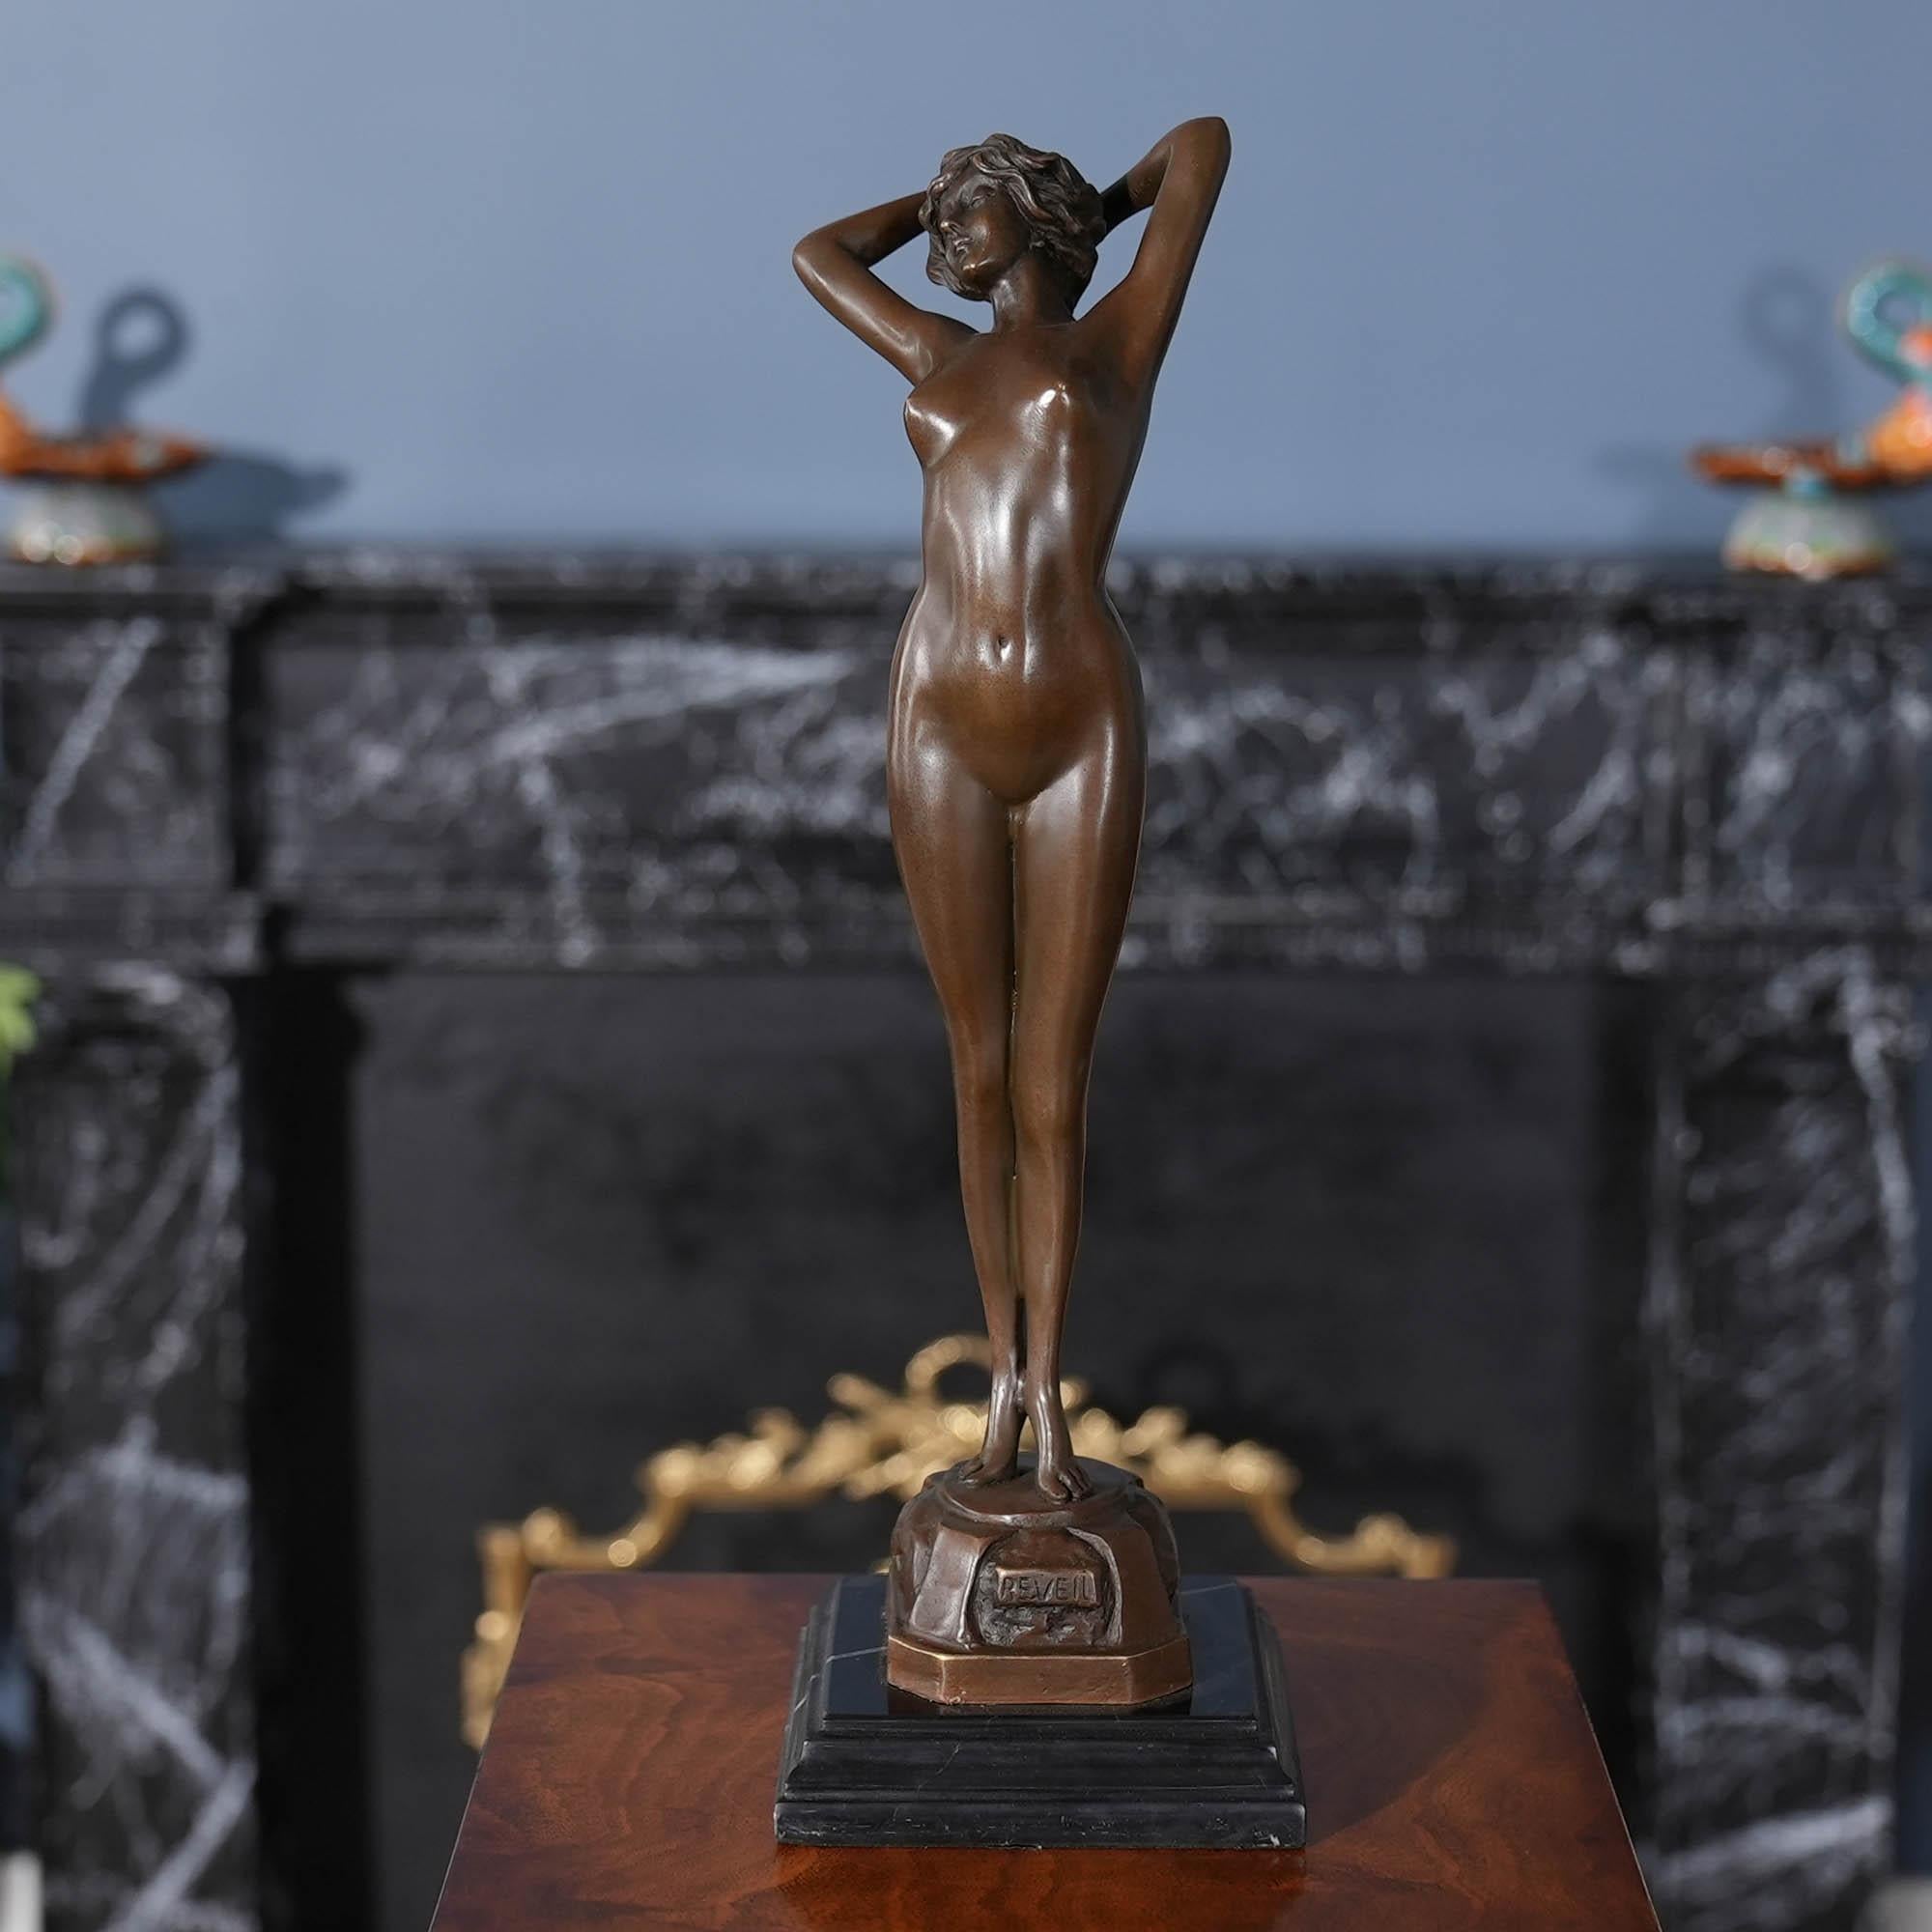 Gracieuse même lorsqu'elle est immobile, la femme en bronze qui s'étire sur un socle en marbre est un ajout charmant à tout décor. Utilisant des méthodes traditionnelles de moulage à la cire perdue, la statue en bronze de la femme qui s'étire est